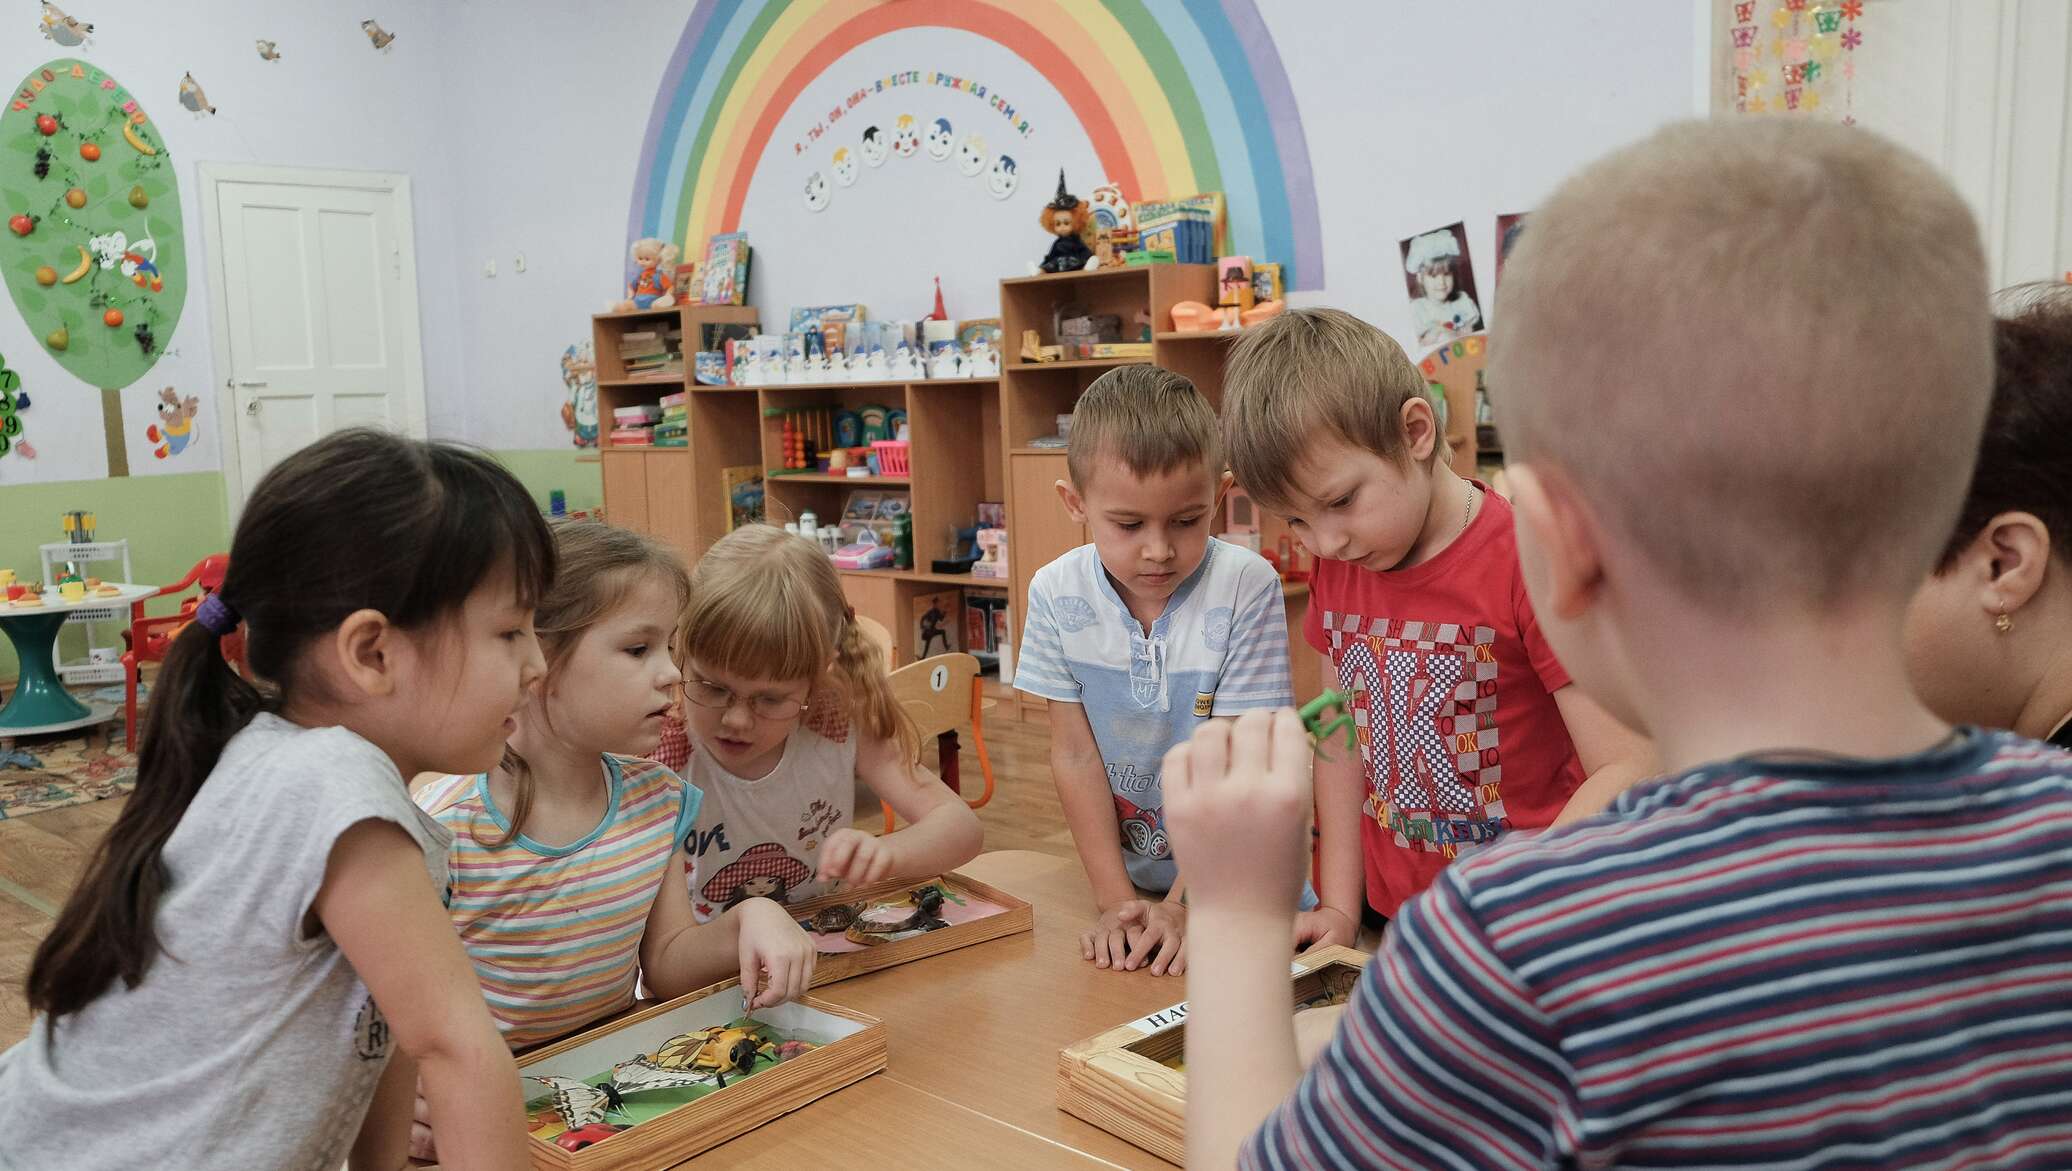 Жизнь дошкольной группы. Дети в детском саду. Детские сады в России. Фото детей в детском саду. Государственный детский сад.